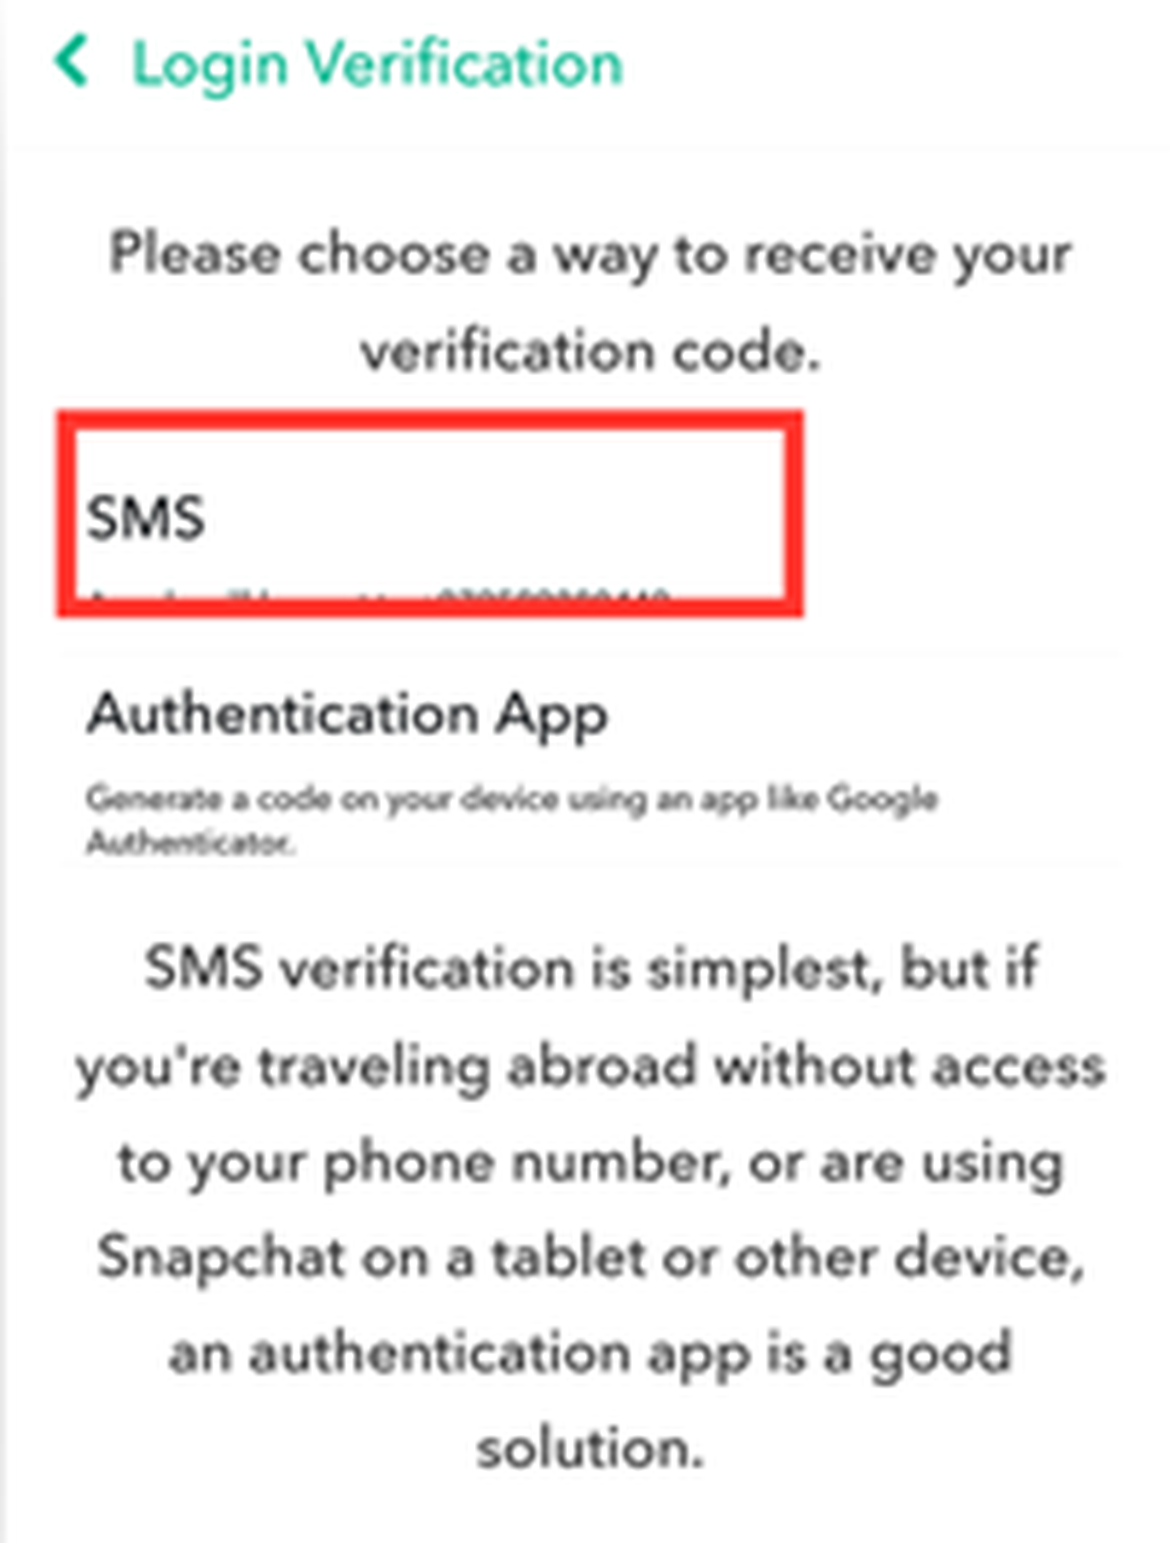 طريقة_ارسال_رمز_اختار_SMS_التحقق_من_تسجيل_الدخول_بتأمين_و_حماية_حسابك_على_تطبيق_السناب_شات_